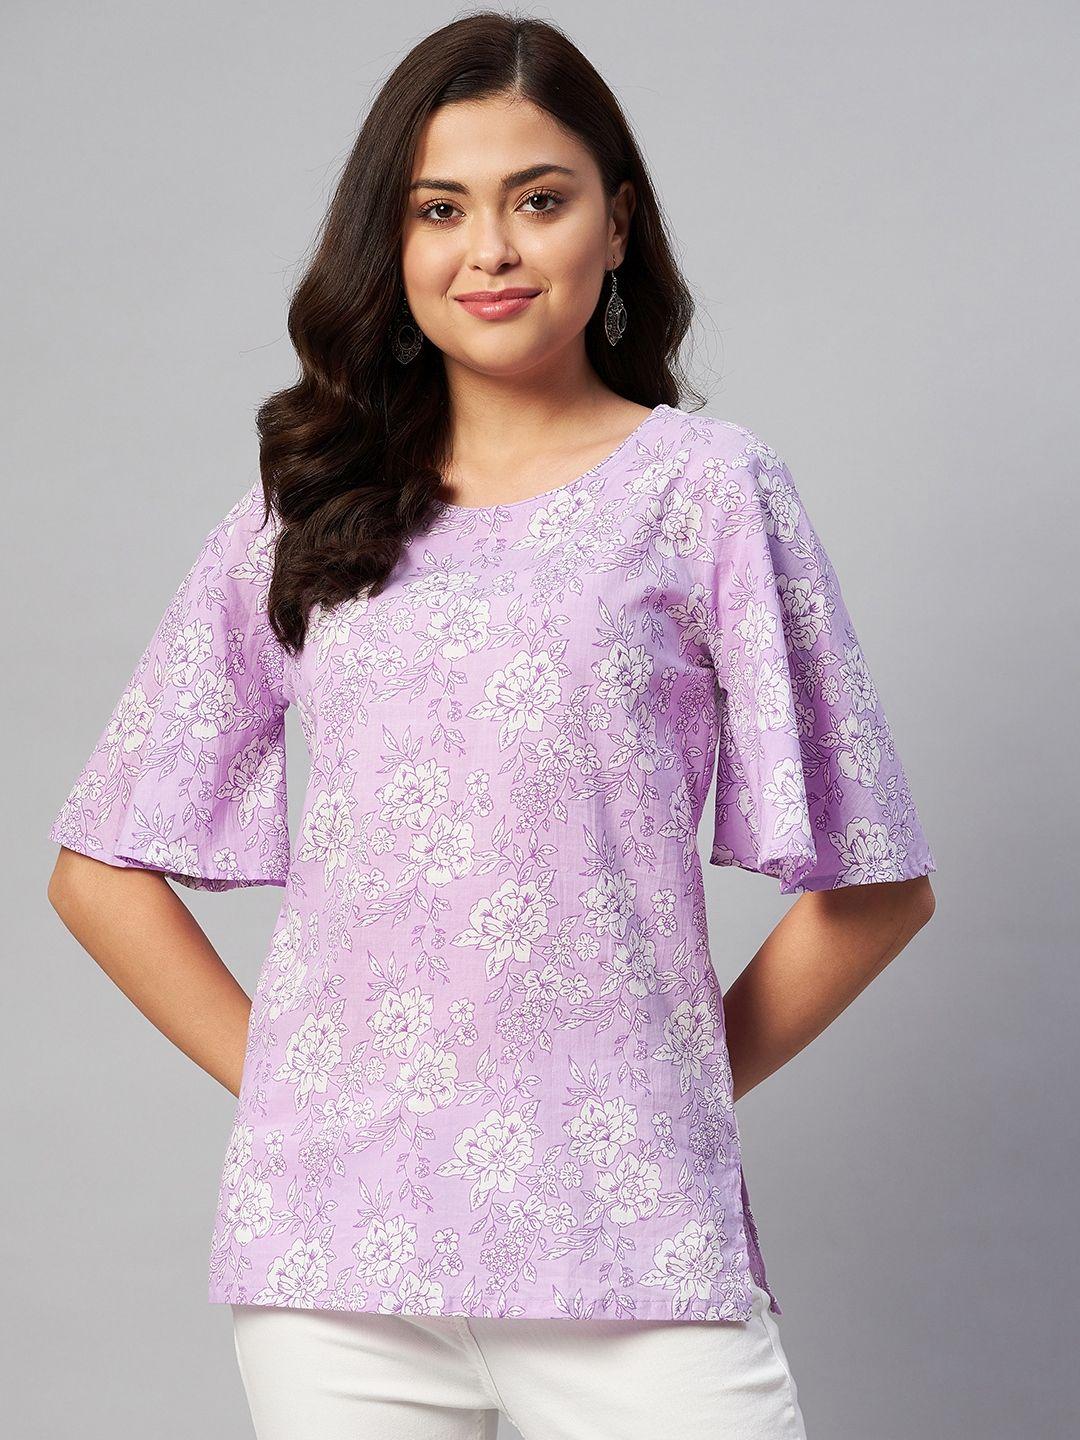 miravan lavender & white print flared sleeves longline top